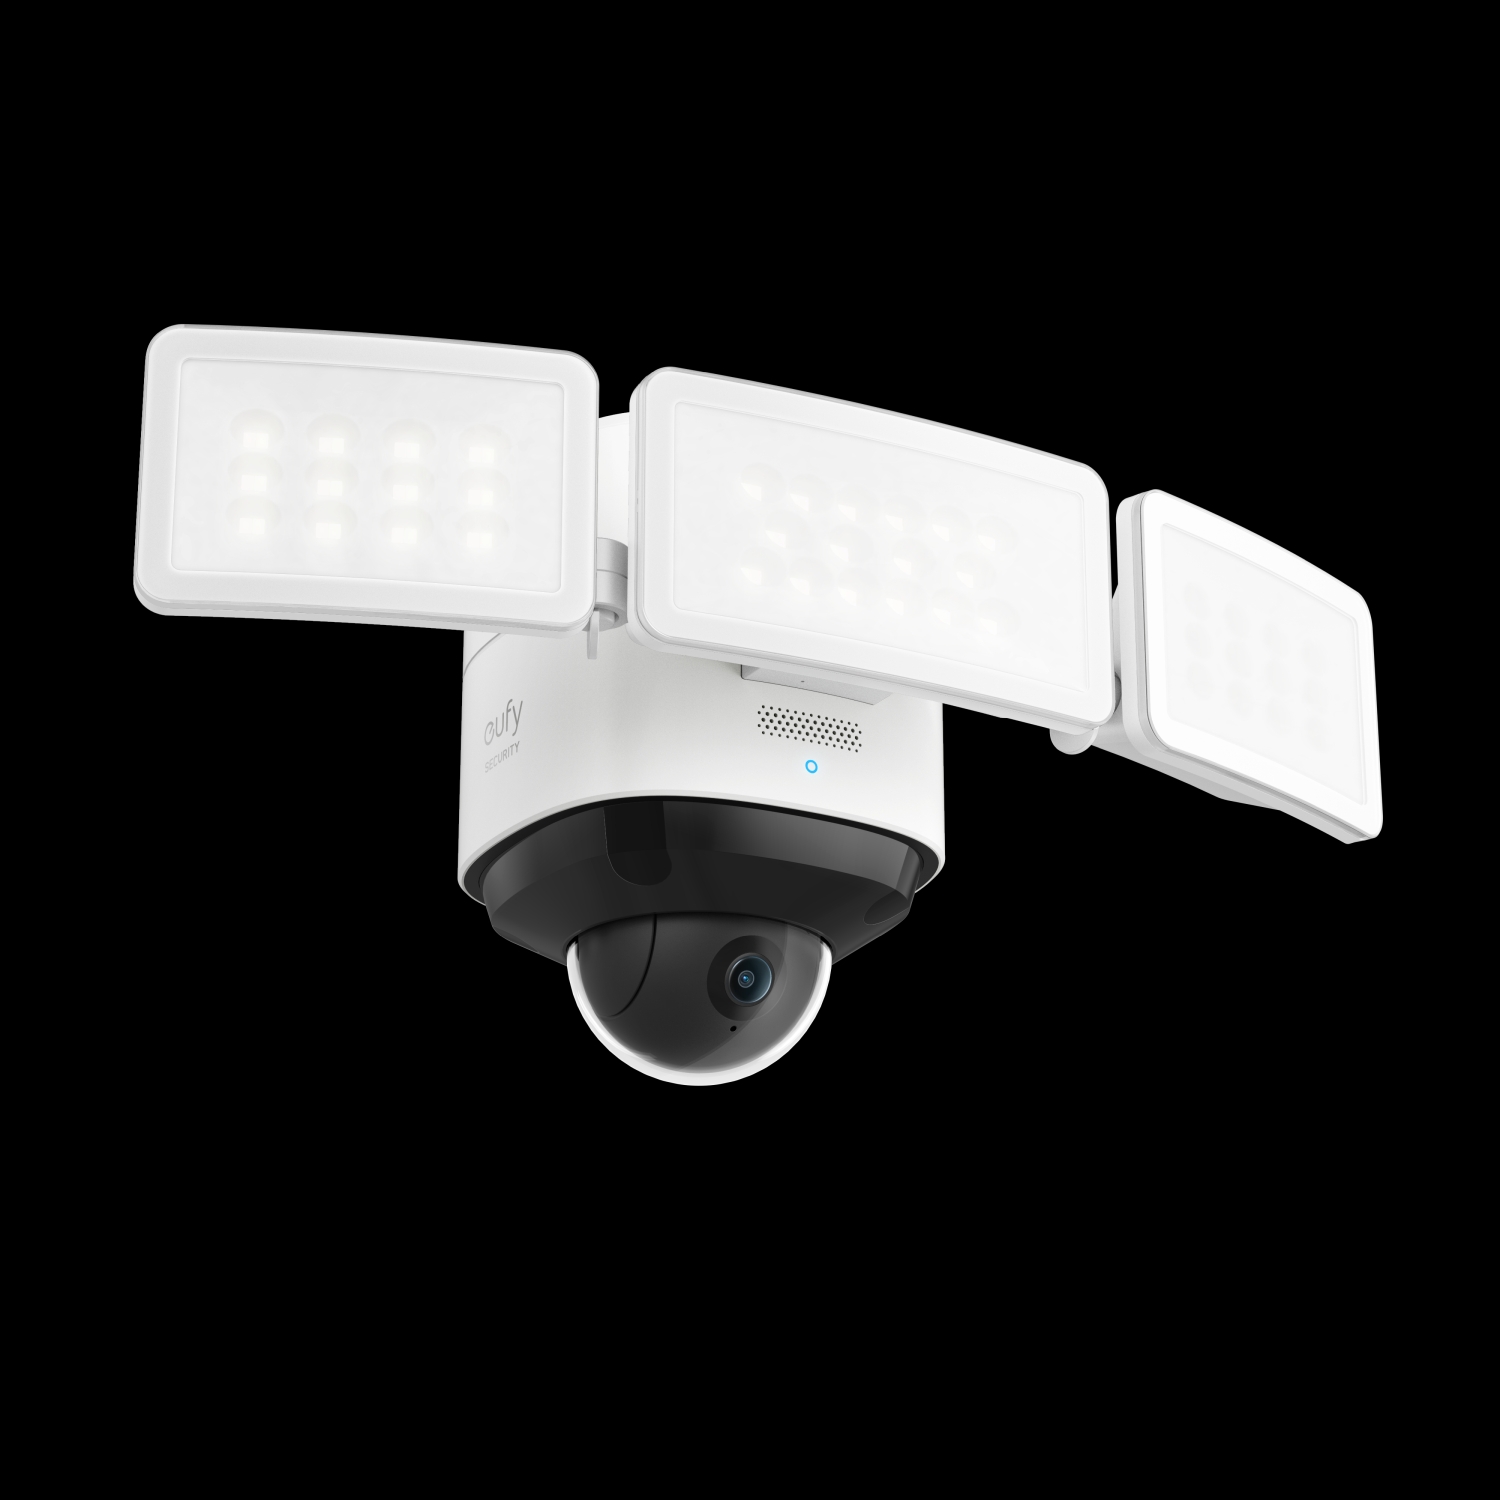 EZVIZ C6W indoor security cam review: Pan/tilt on a modest budget